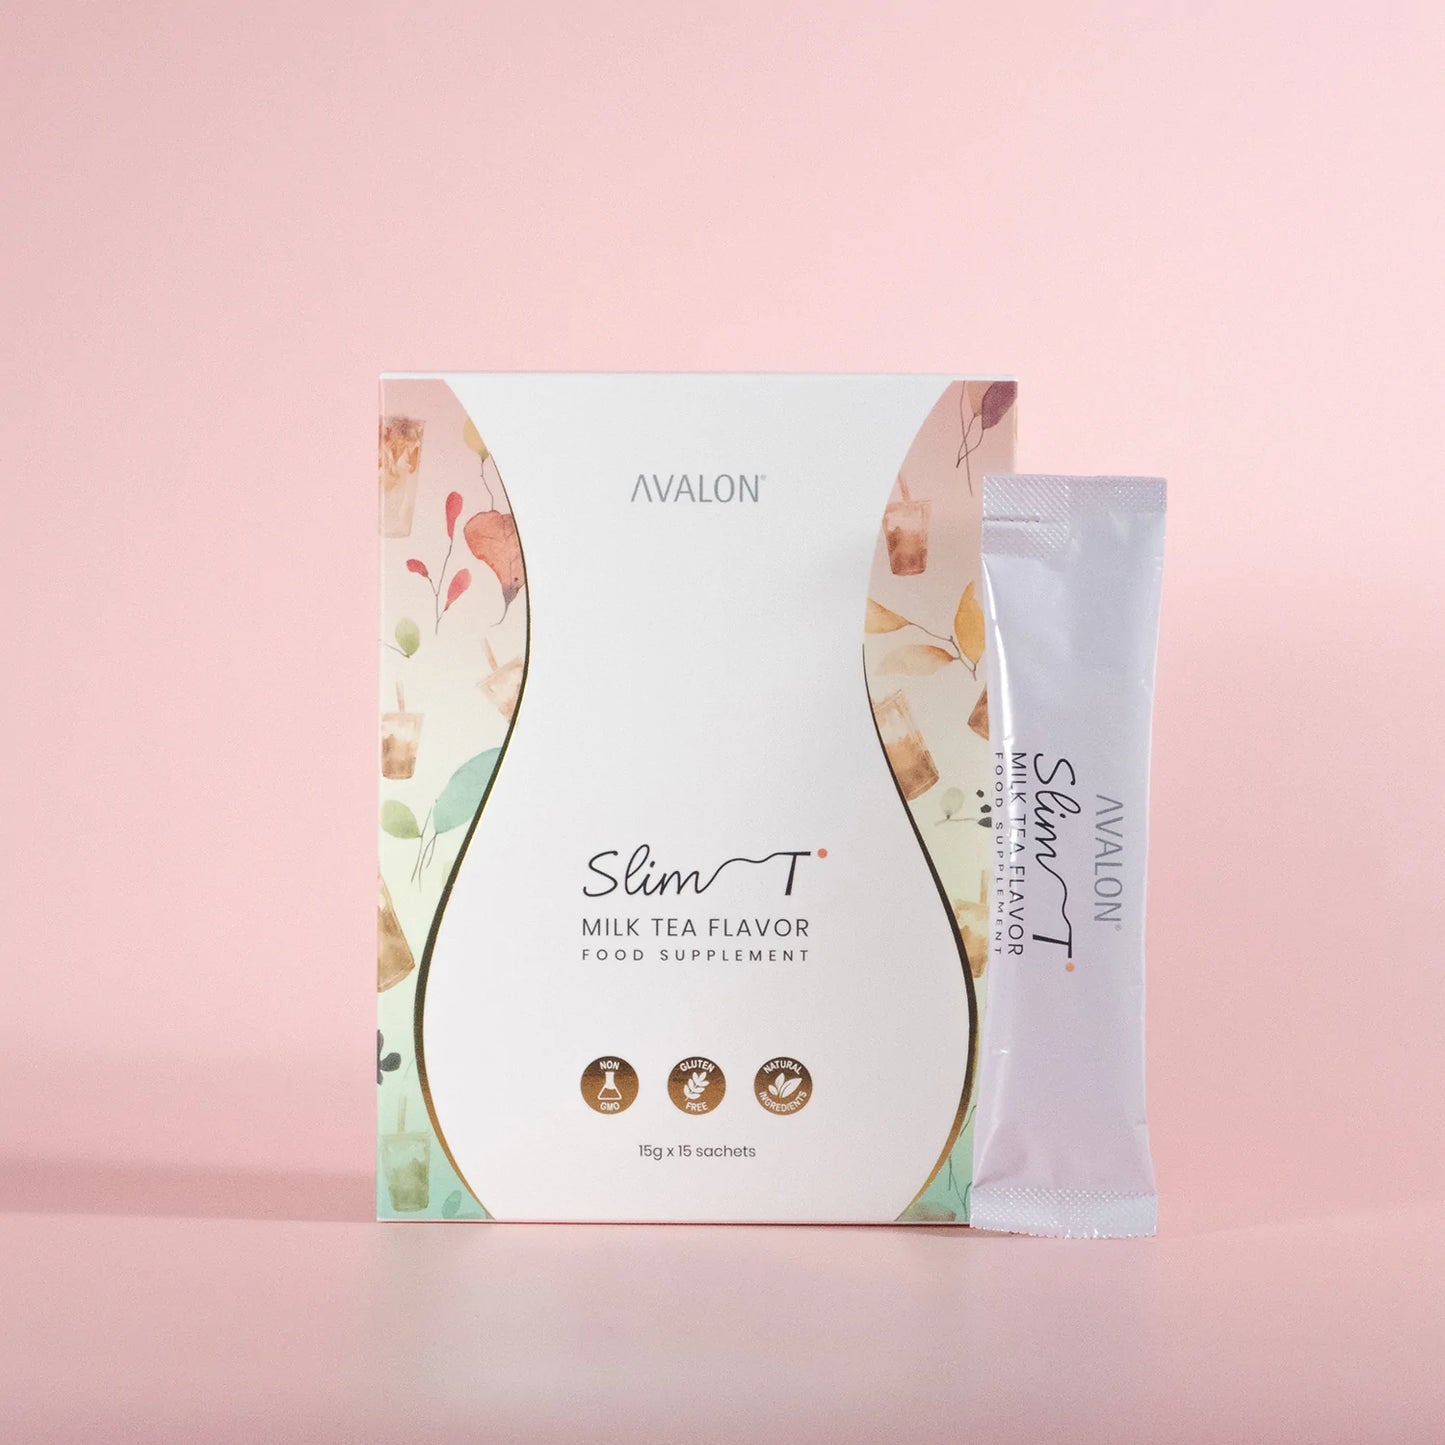 AVALON® Slim T (SG Pharmacy #1 Slimming Milk Tea)